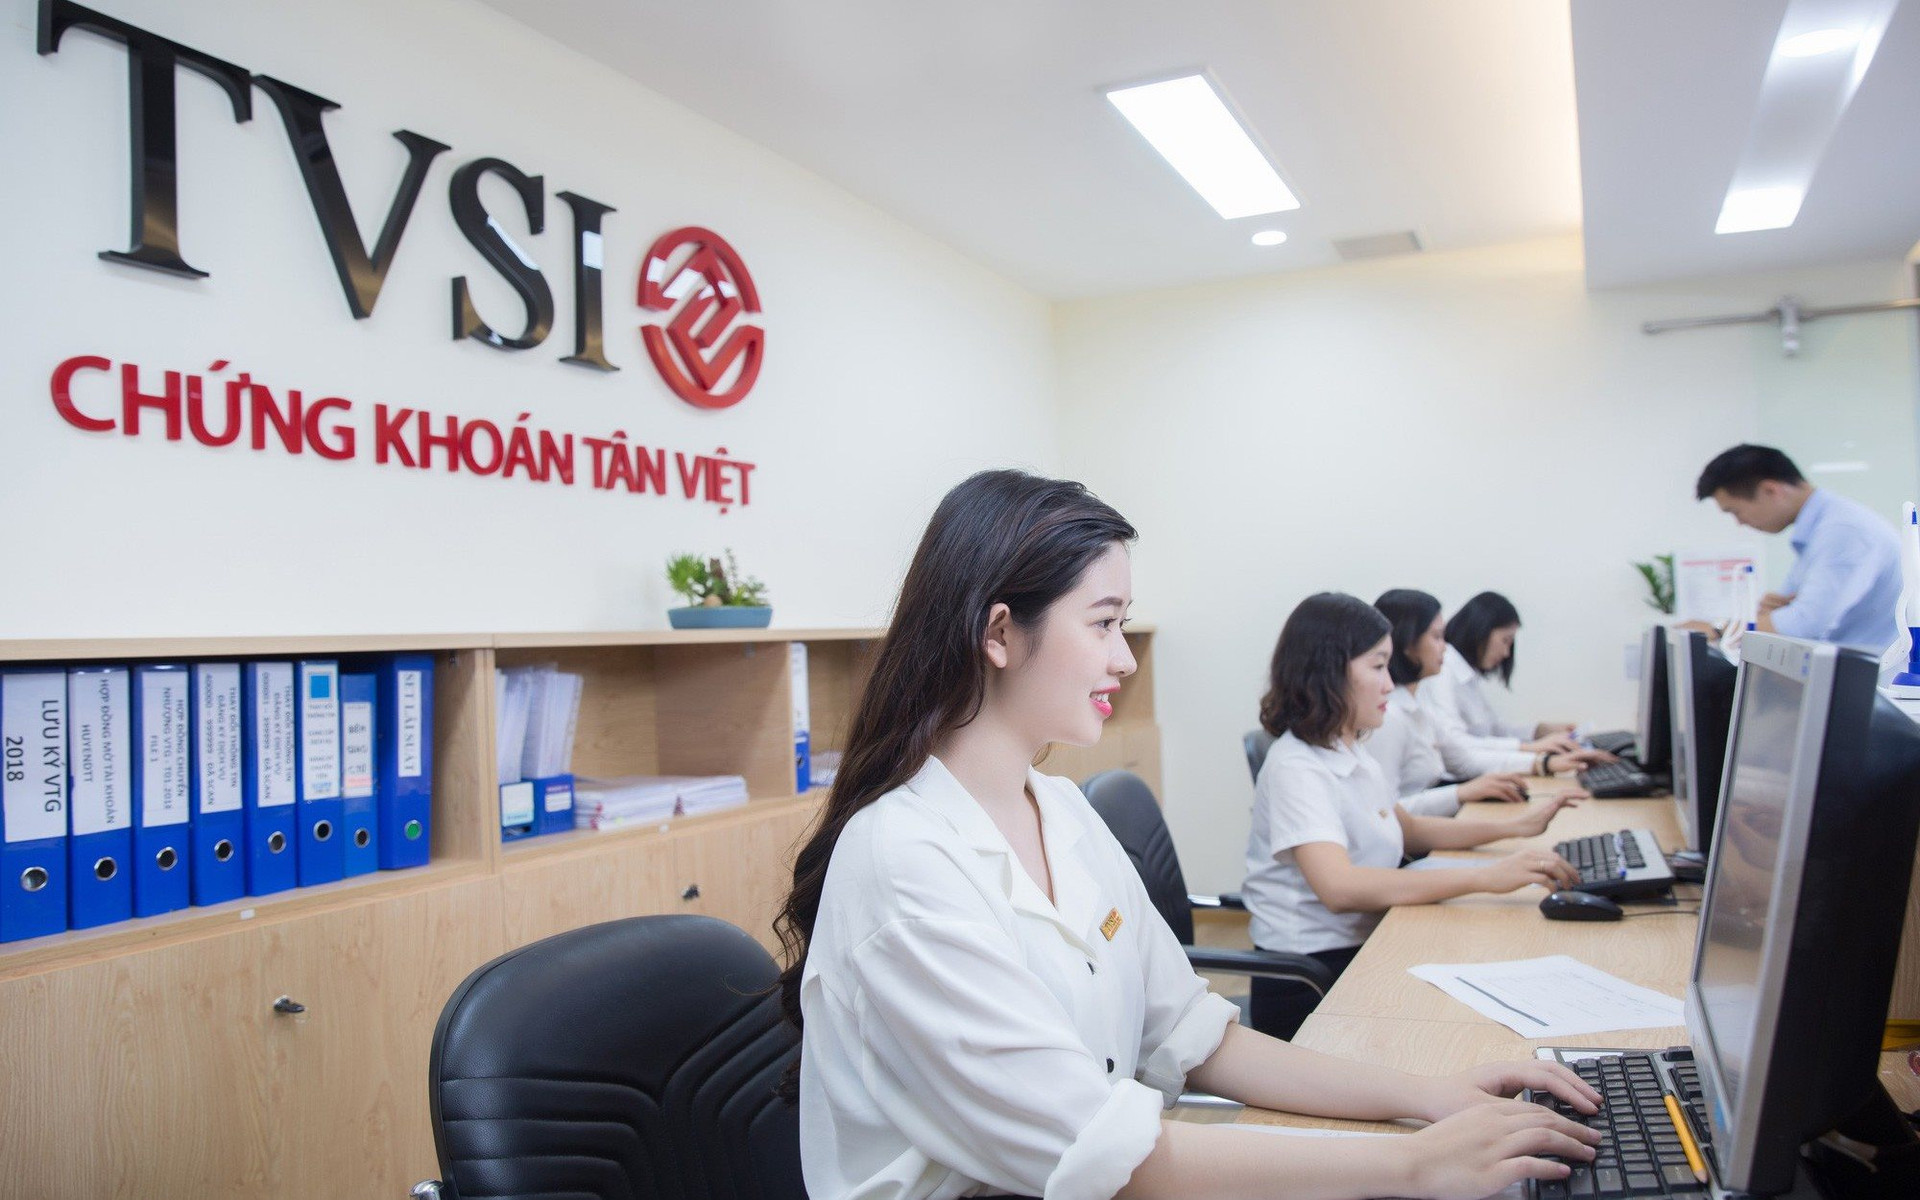 Chứng khoán Tân Việt (TVSI): Ngừng dịch vụ ứng trước tiền bán chứng khoán